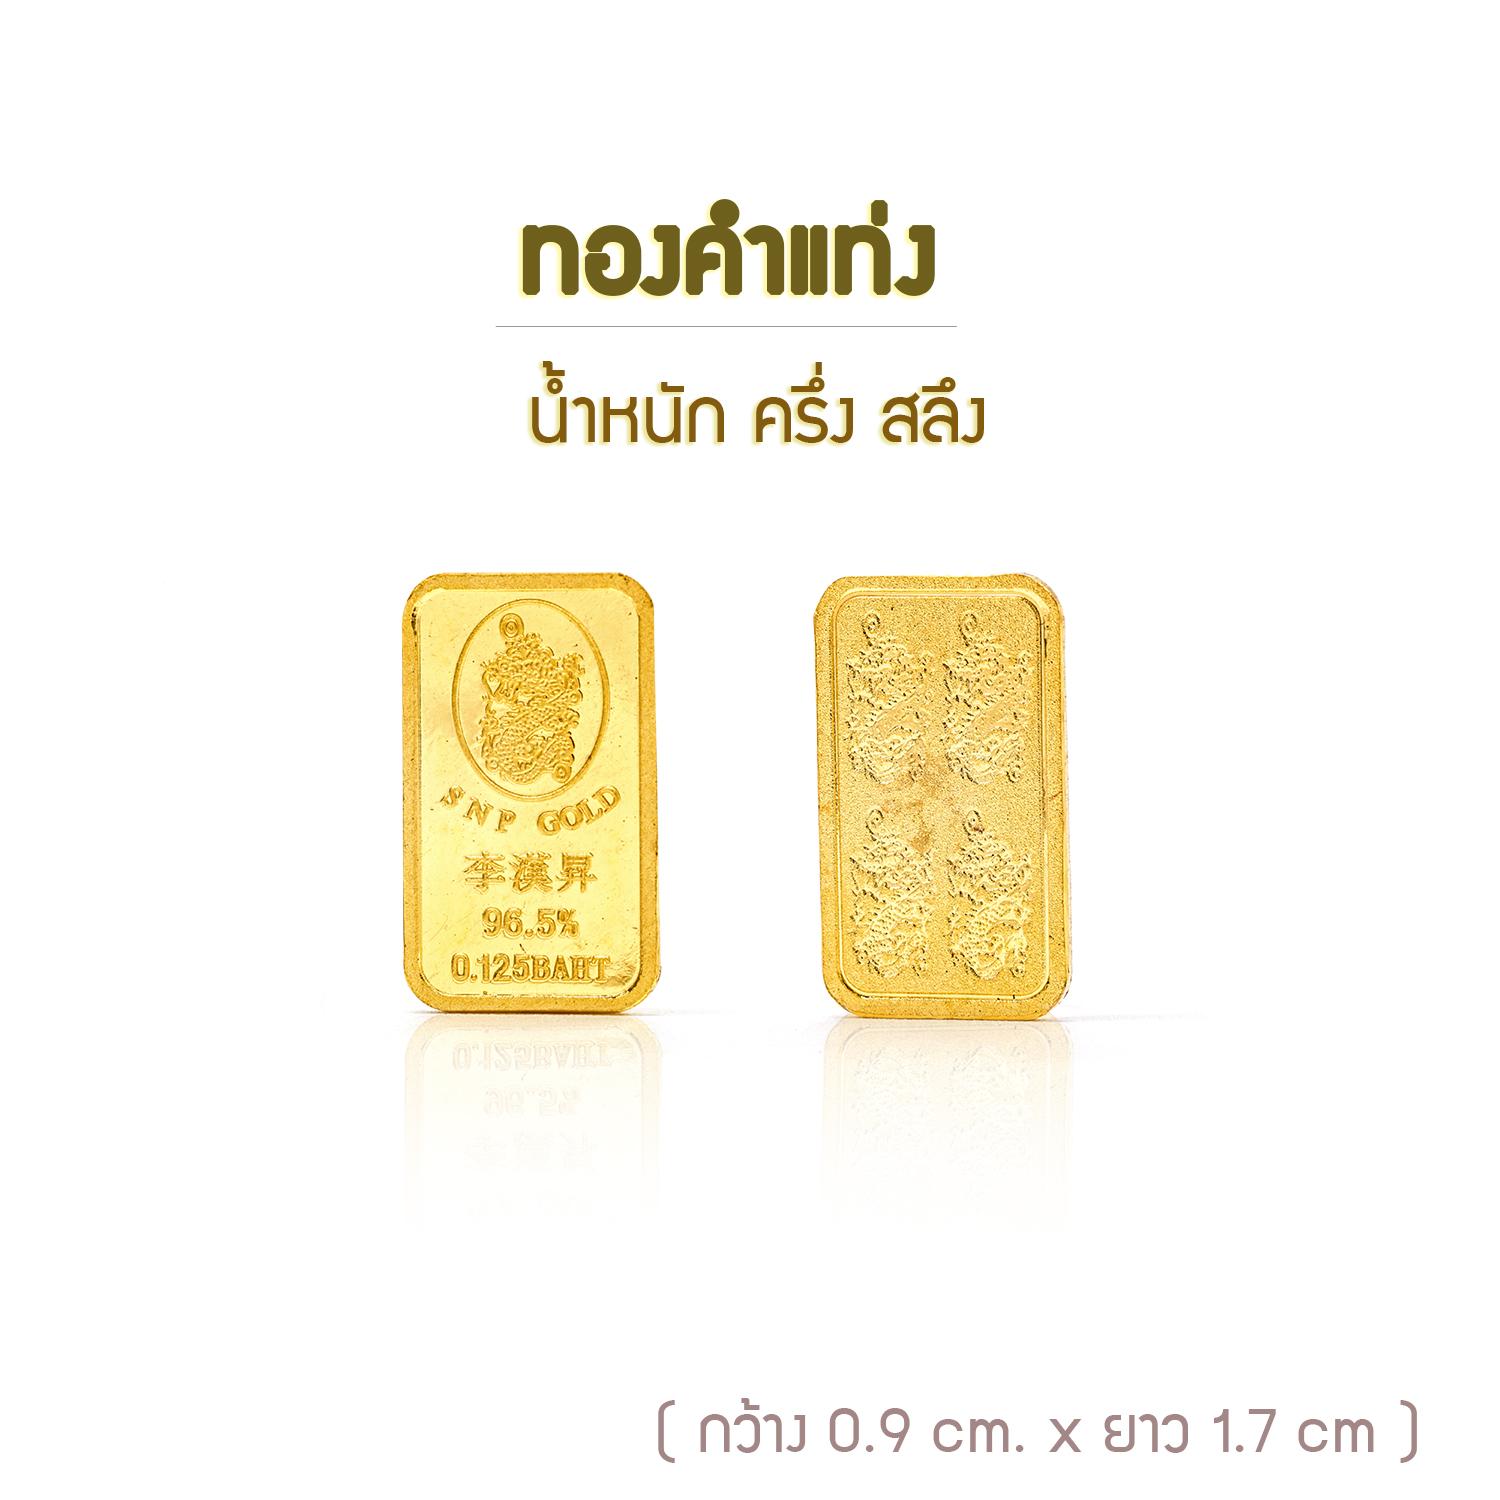 SSNP GOLD 3 ทองคำแท่งหนัก ครึ่งสลึง แท้มีใบรับประกัน